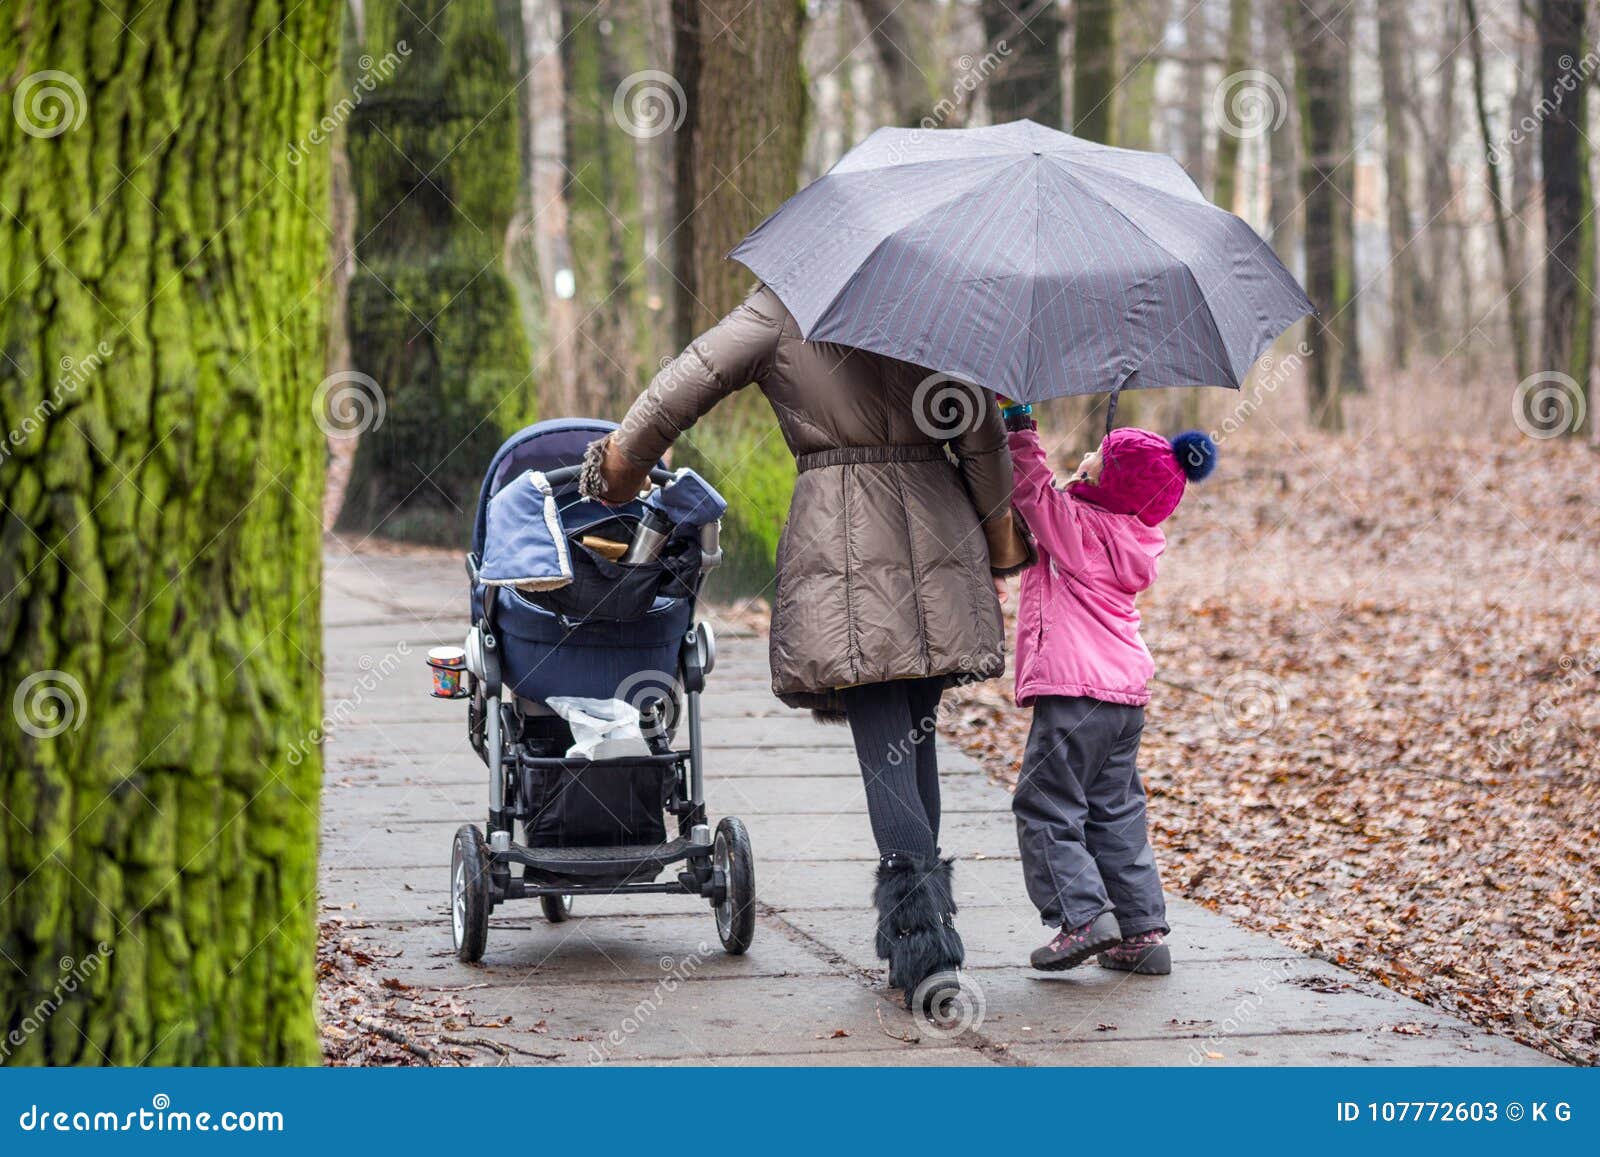 umbrella for stroller for mom